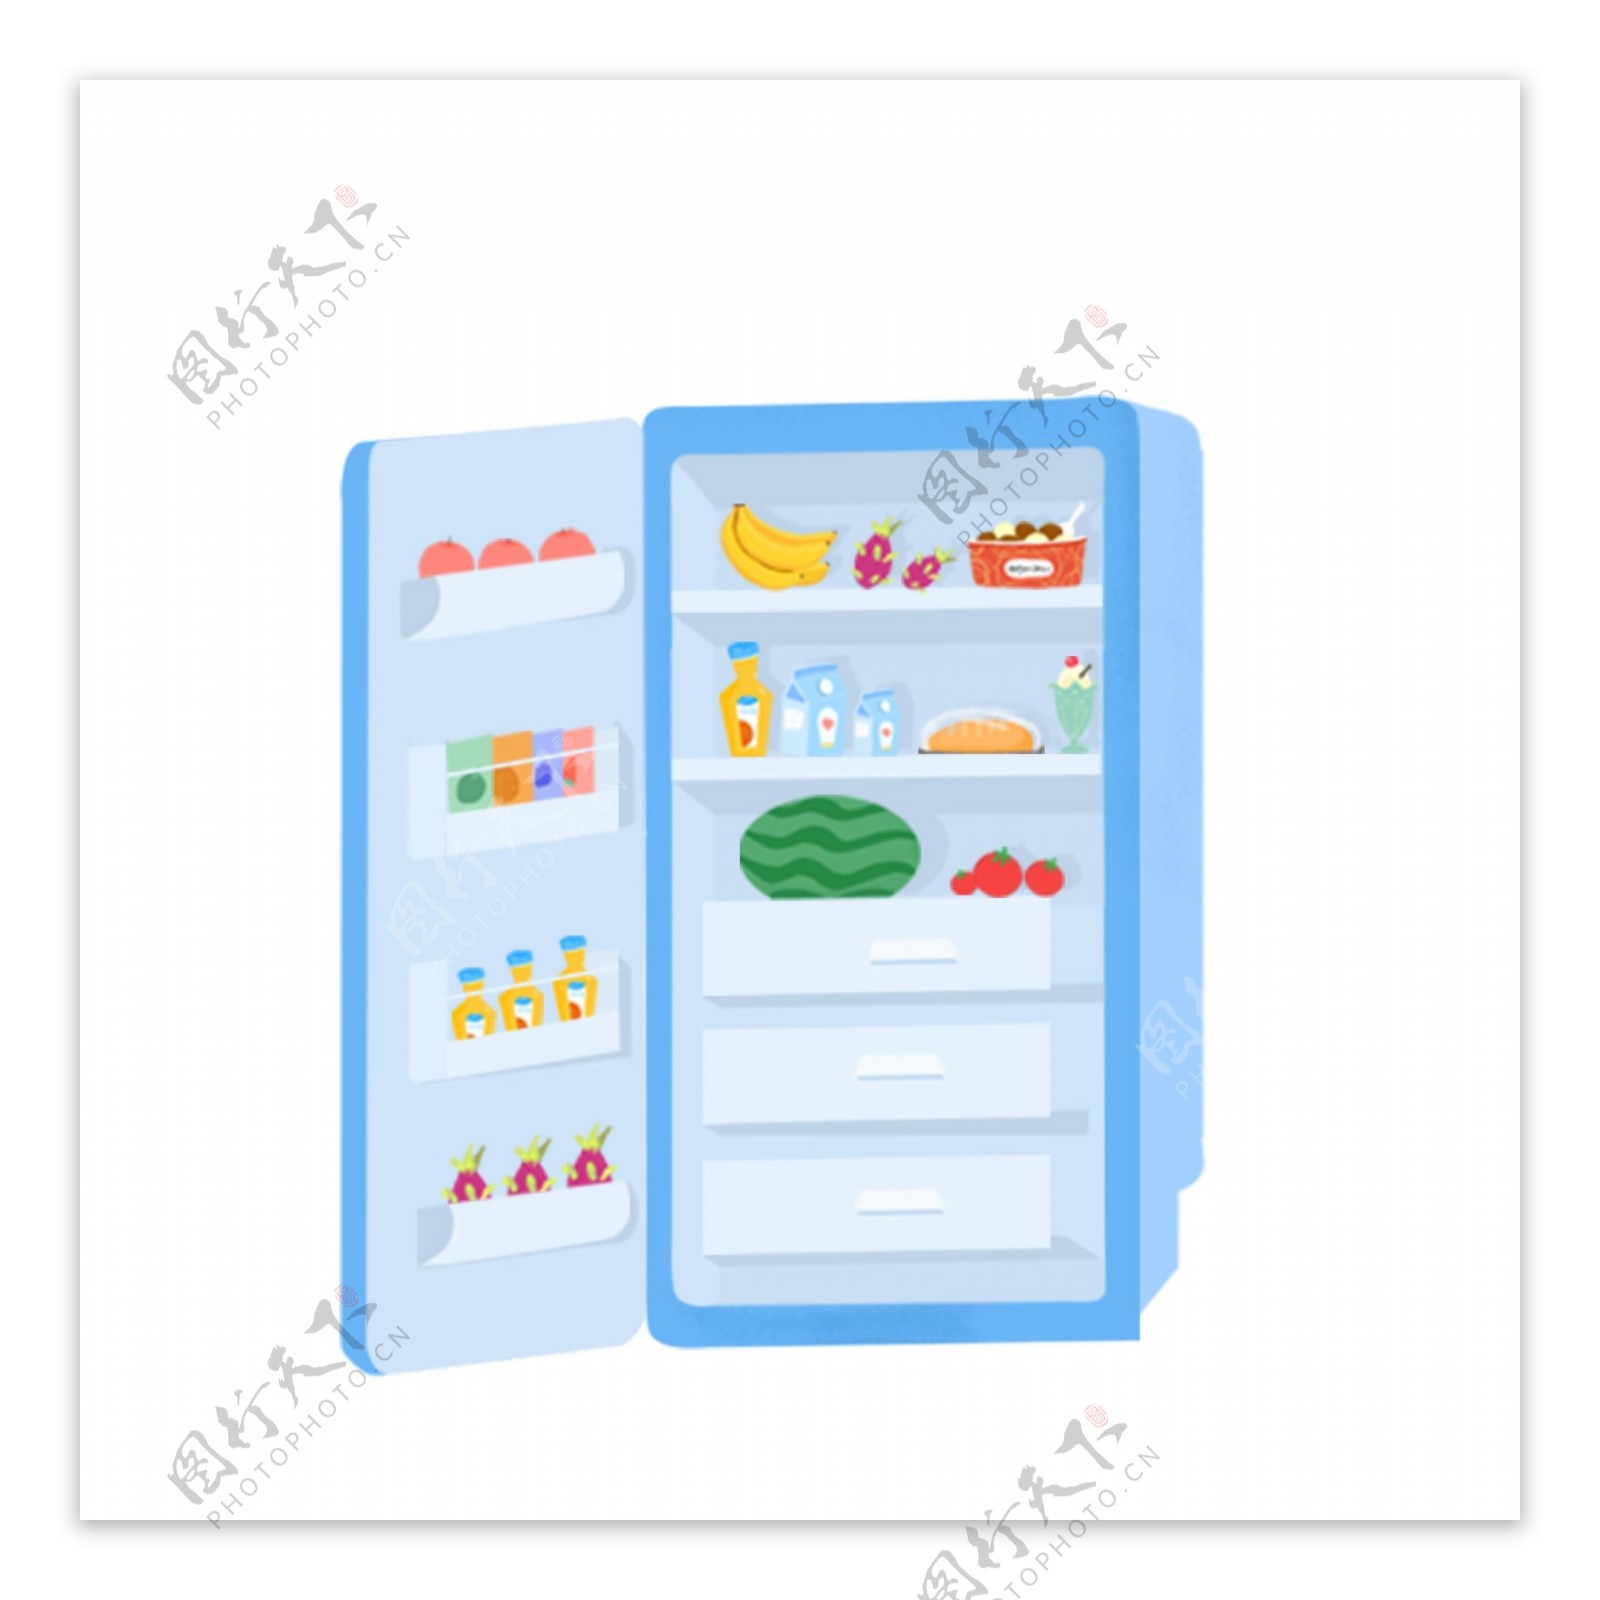 装修满食物的冰箱图案元素